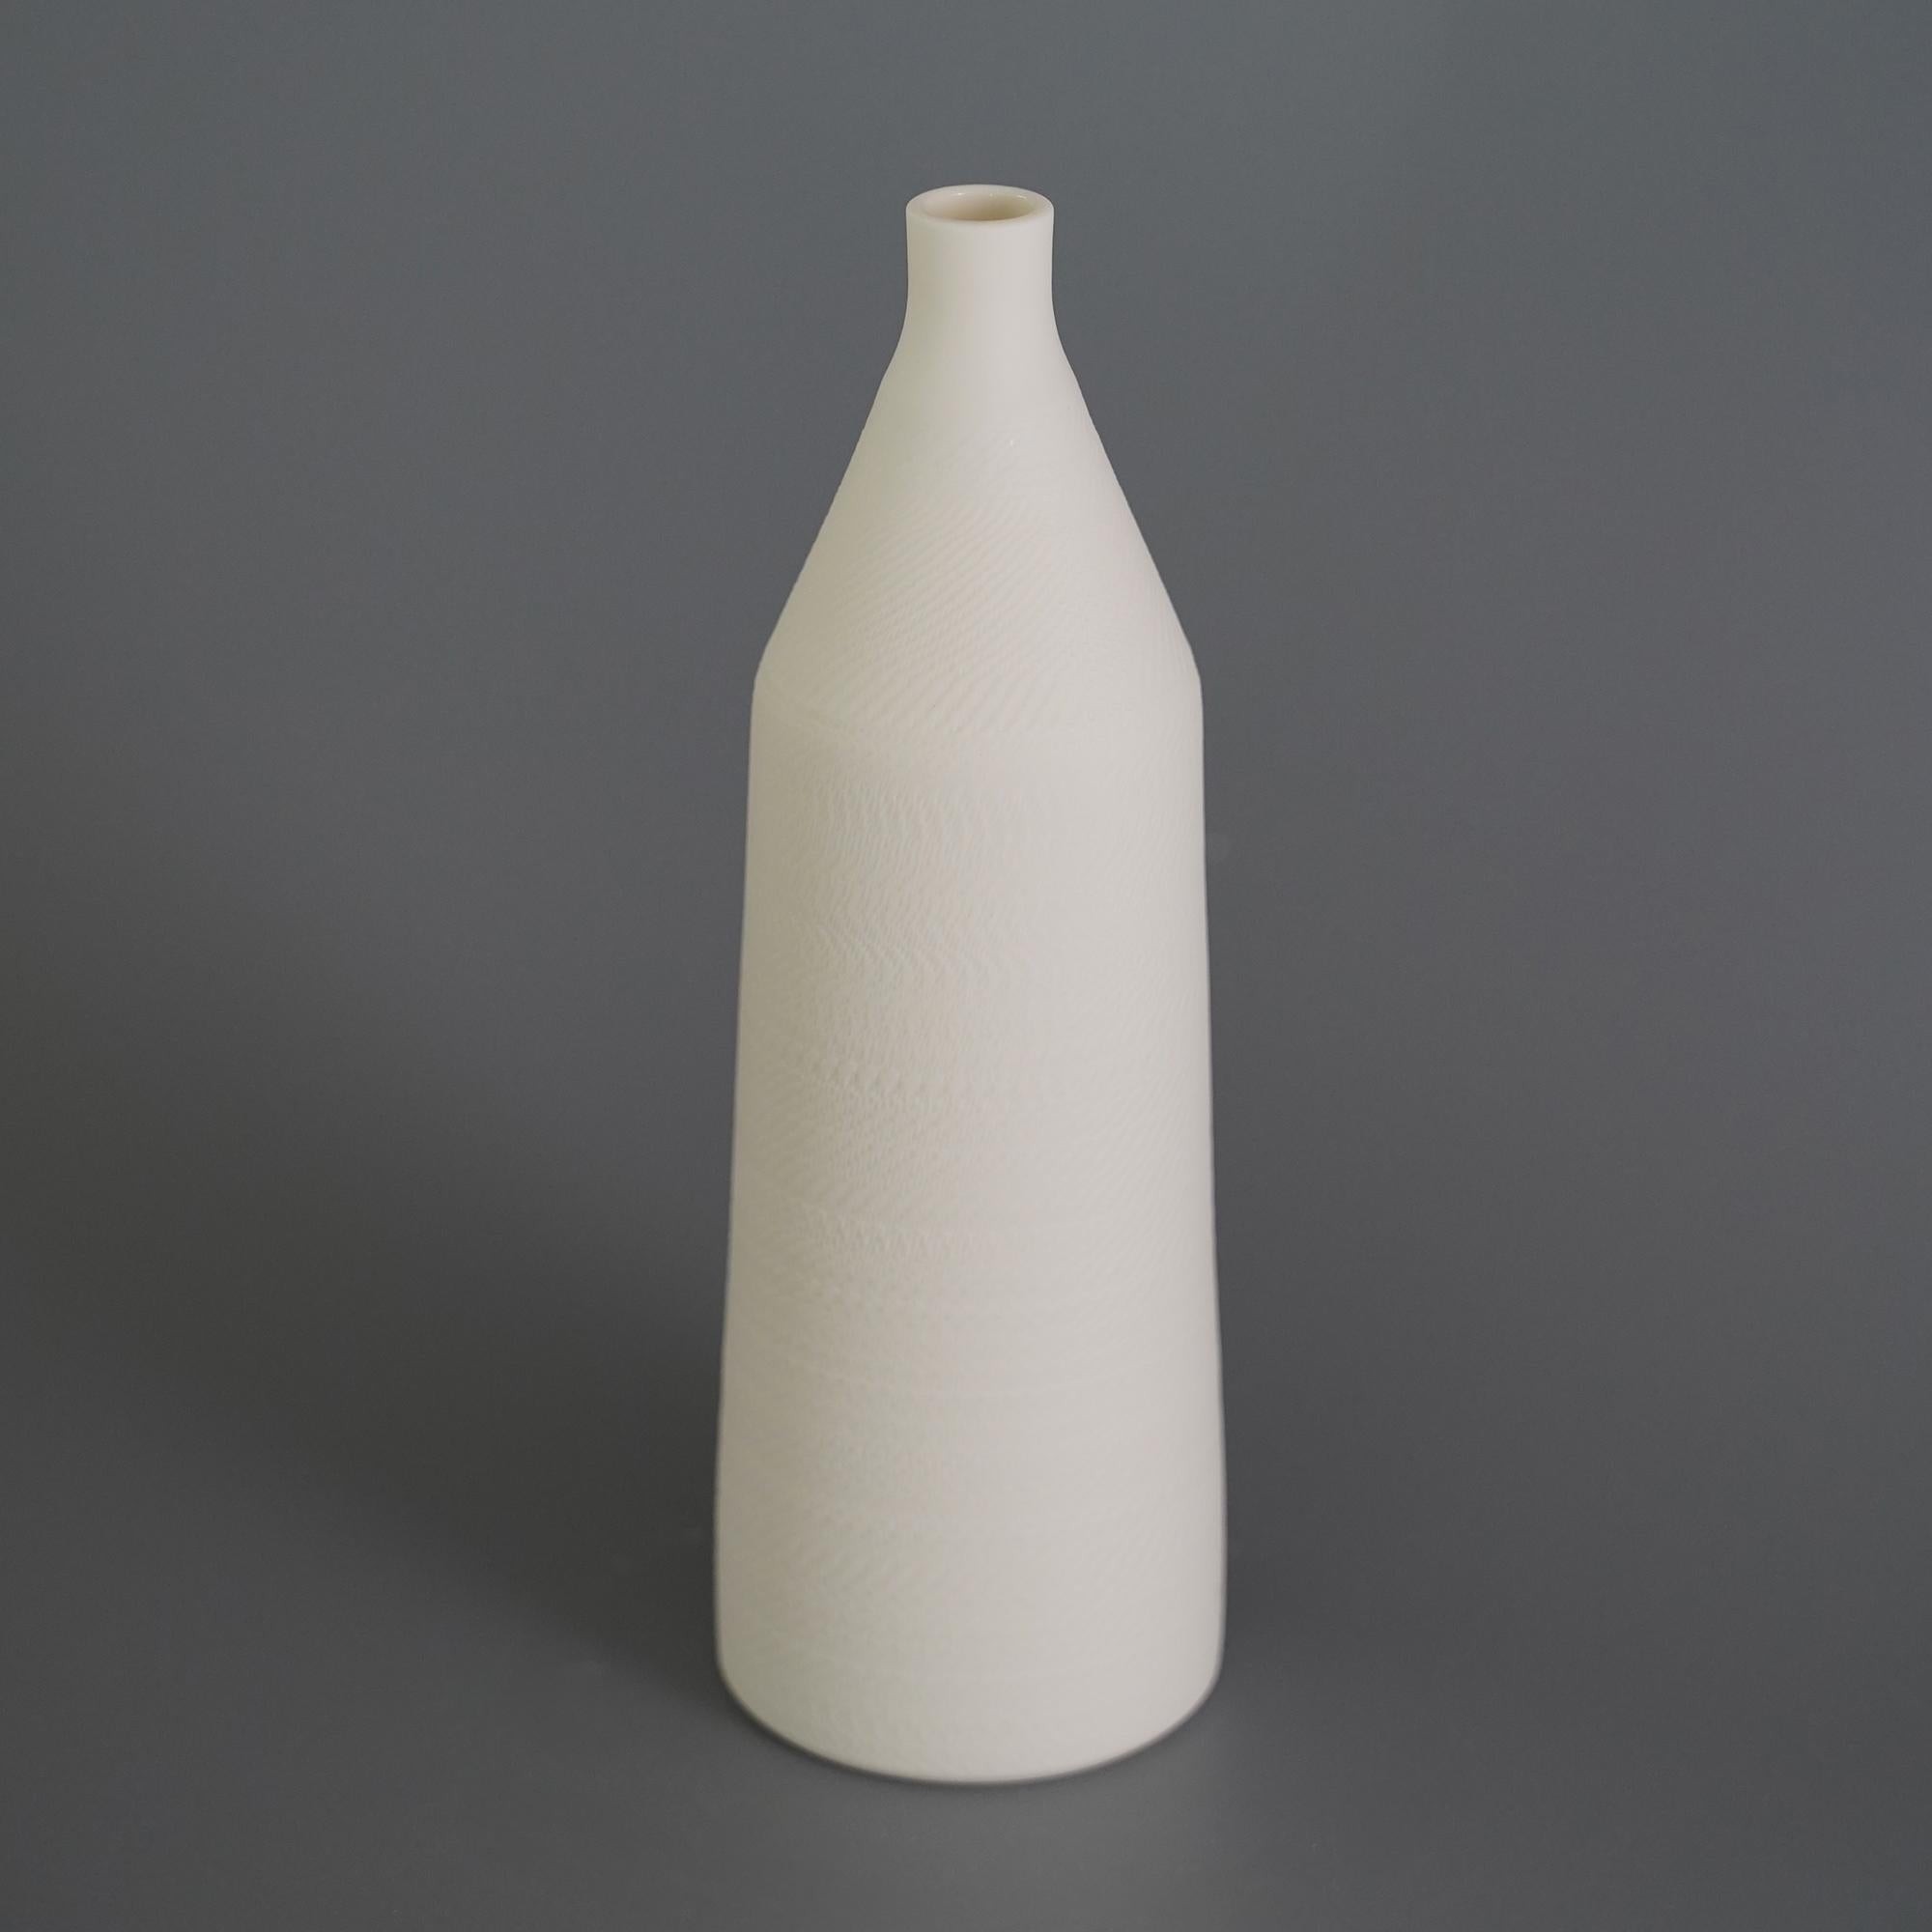 2er-Set Helice-Vase von Studio Cúze
Abmessungen: B 7 x H 21,5 cm
MATERIALIEN: Keramik

Diese handgefertigte Vase hat eine fein strukturierte Oberfläche und ist mit weißer Farbe lackiert. Mit der Lupenfunktion können Sie die feinen Muster sehen, die